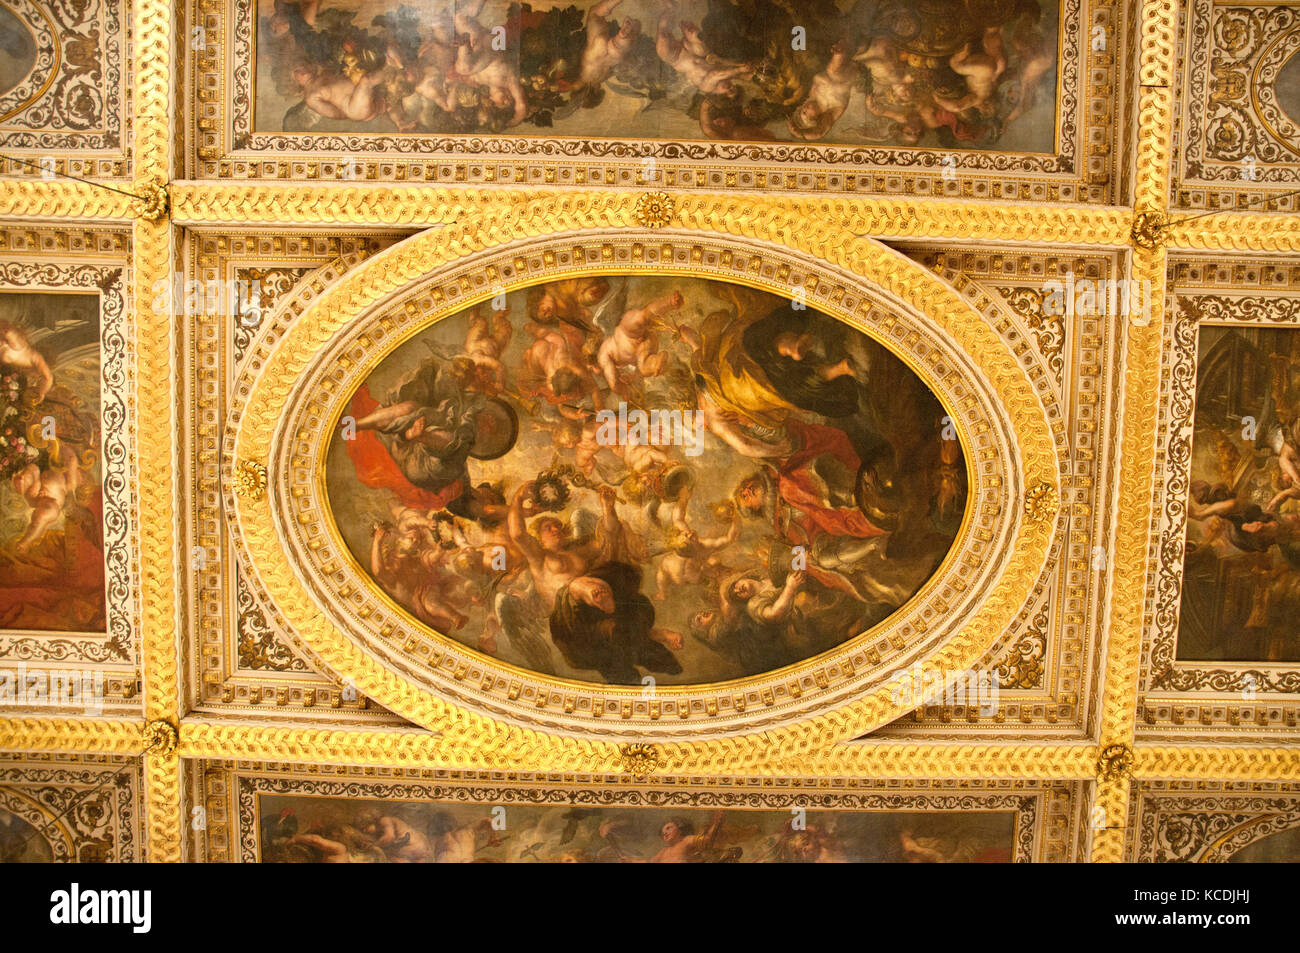 Le plafond d'une salle de réception, de Rubens à Banqueting House, palais  de Whitehall, Londres Photo Stock - Alamy